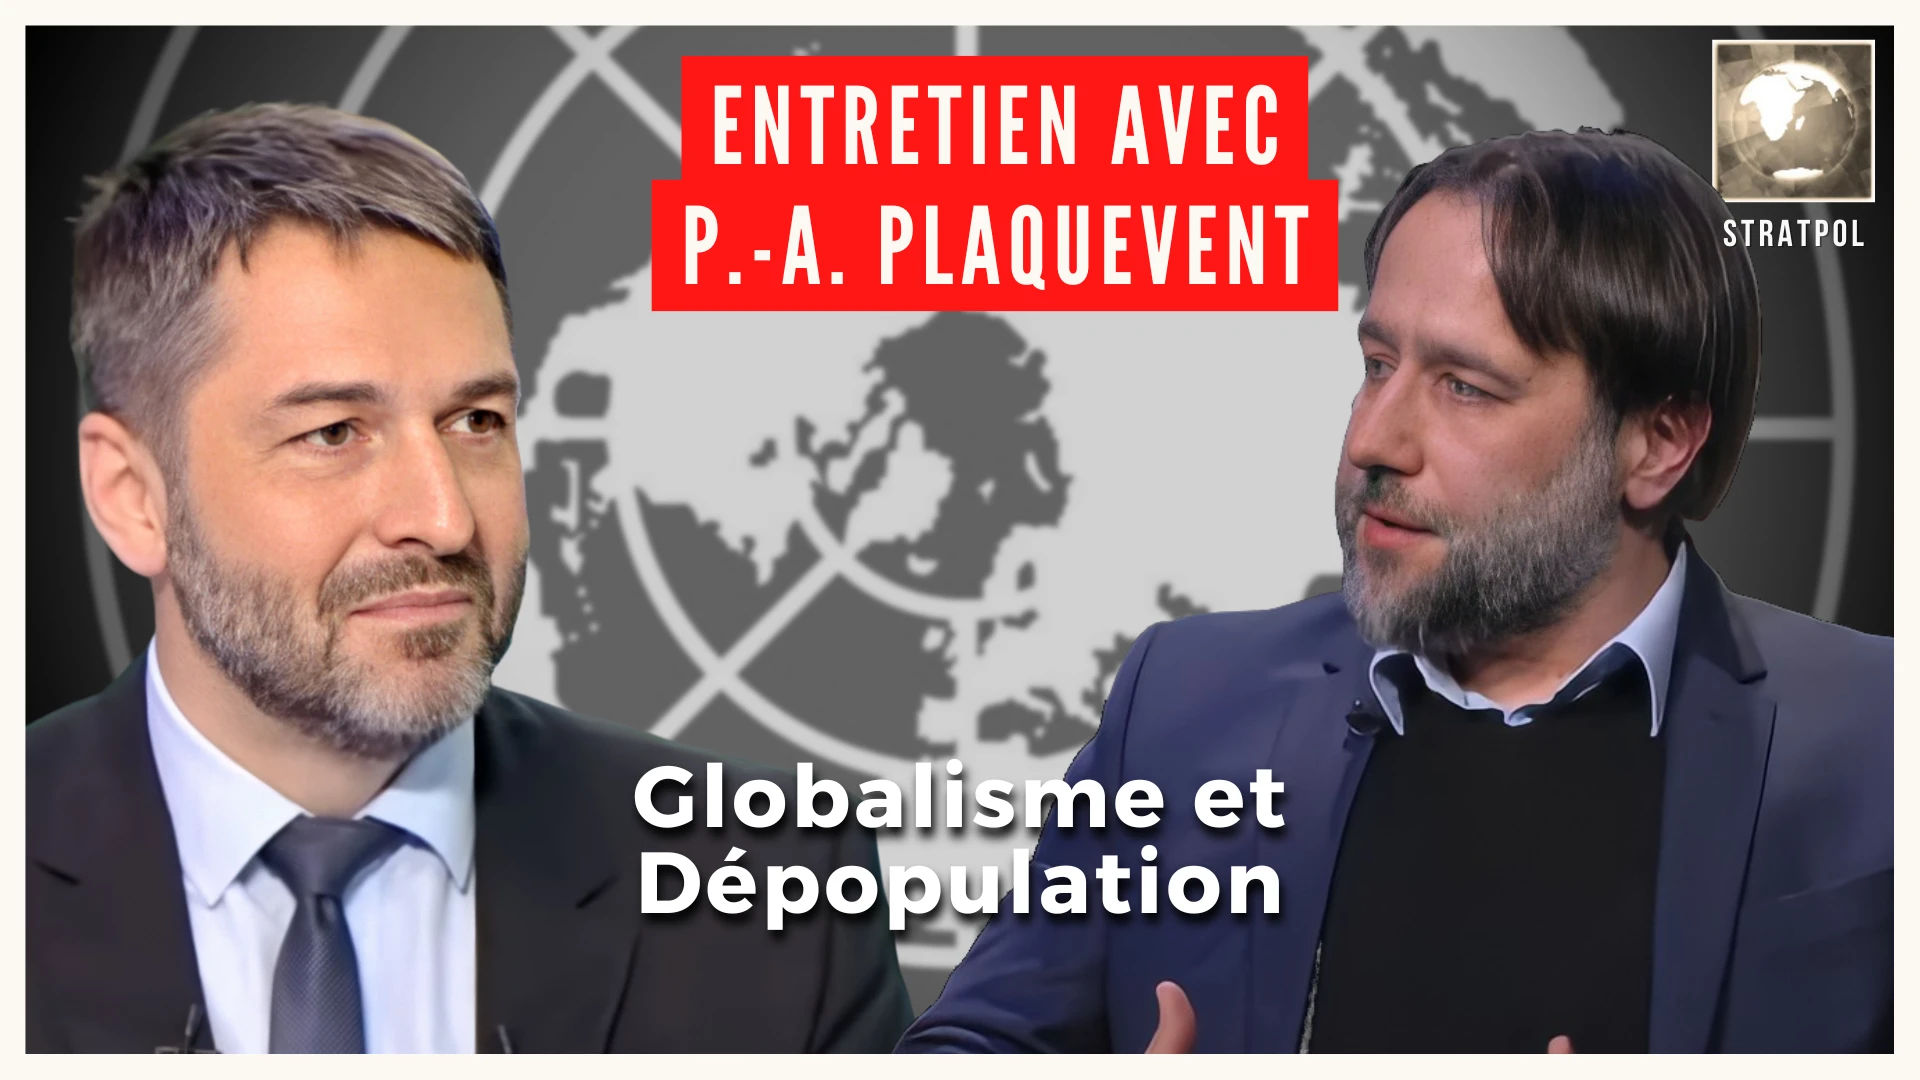 Globalisme et dépopulation. Entretien avec Pierre-Antoine Plaquevent.